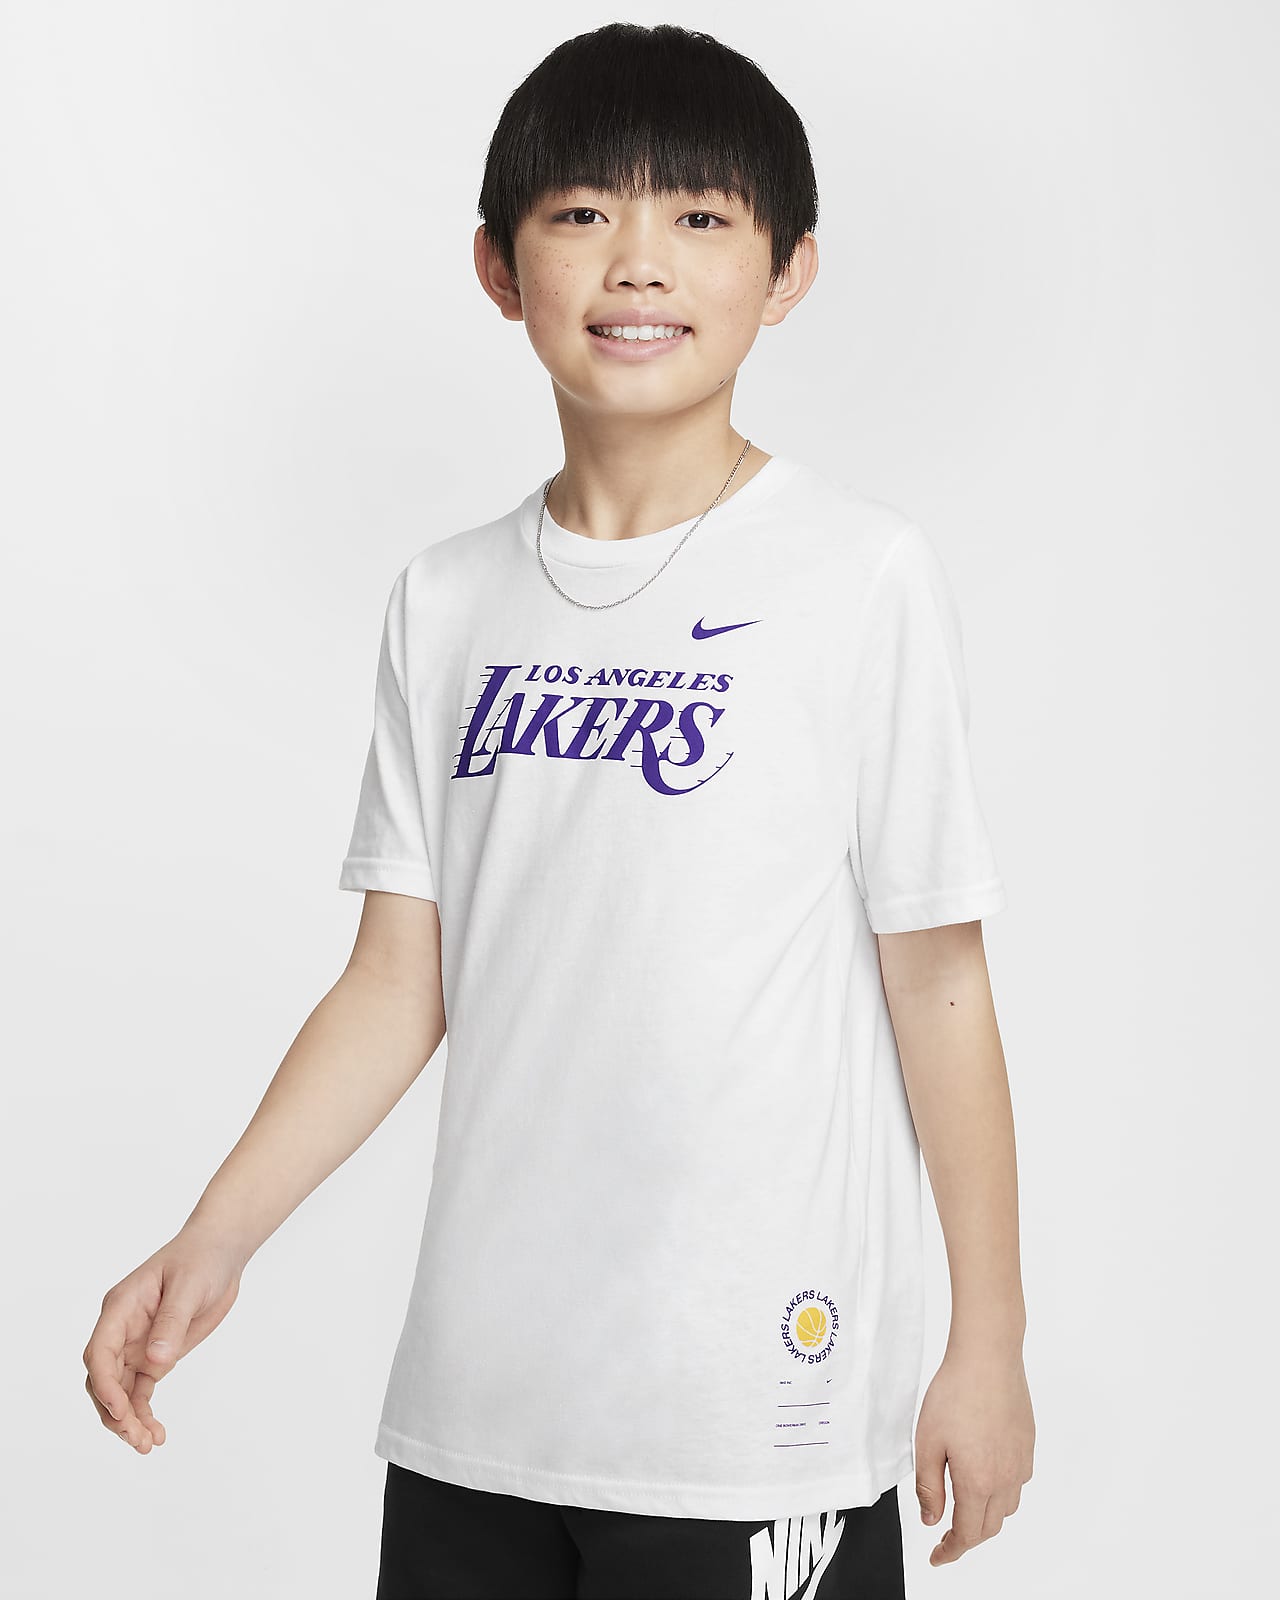 T-shirt NBA Nike Los Angeles Lakers Essential Júnior (Rapaz)